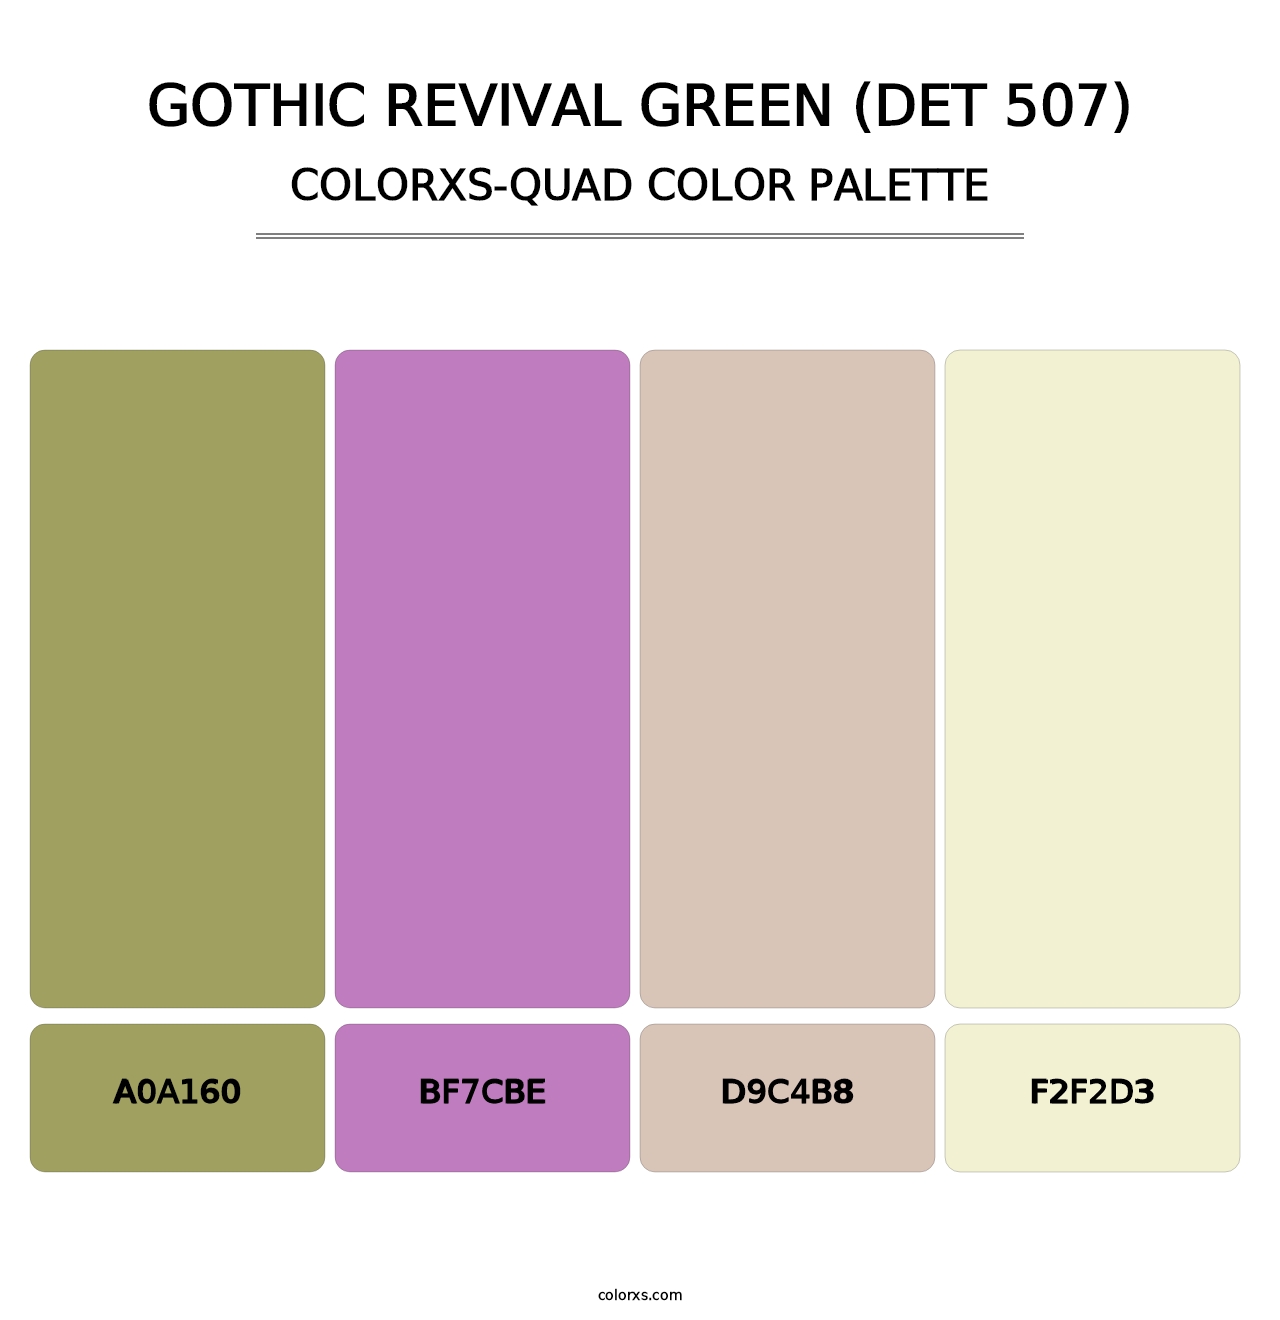 Gothic Revival Green (DET 507) - Colorxs Quad Palette